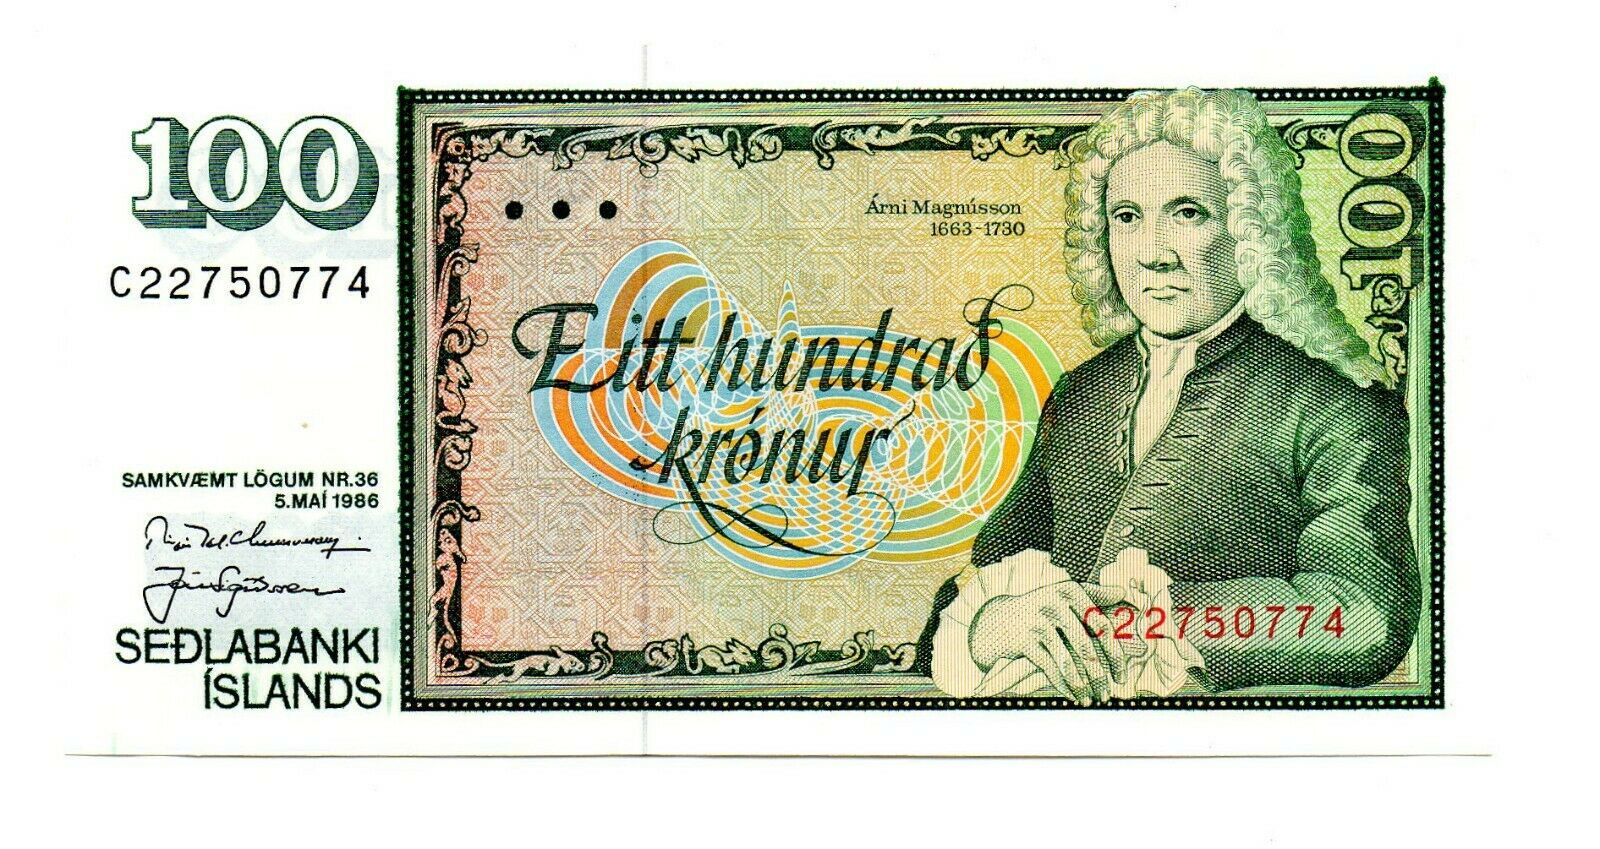 Sedlabank Island Eitt Liindrad Kronur 1986 Iceland Note